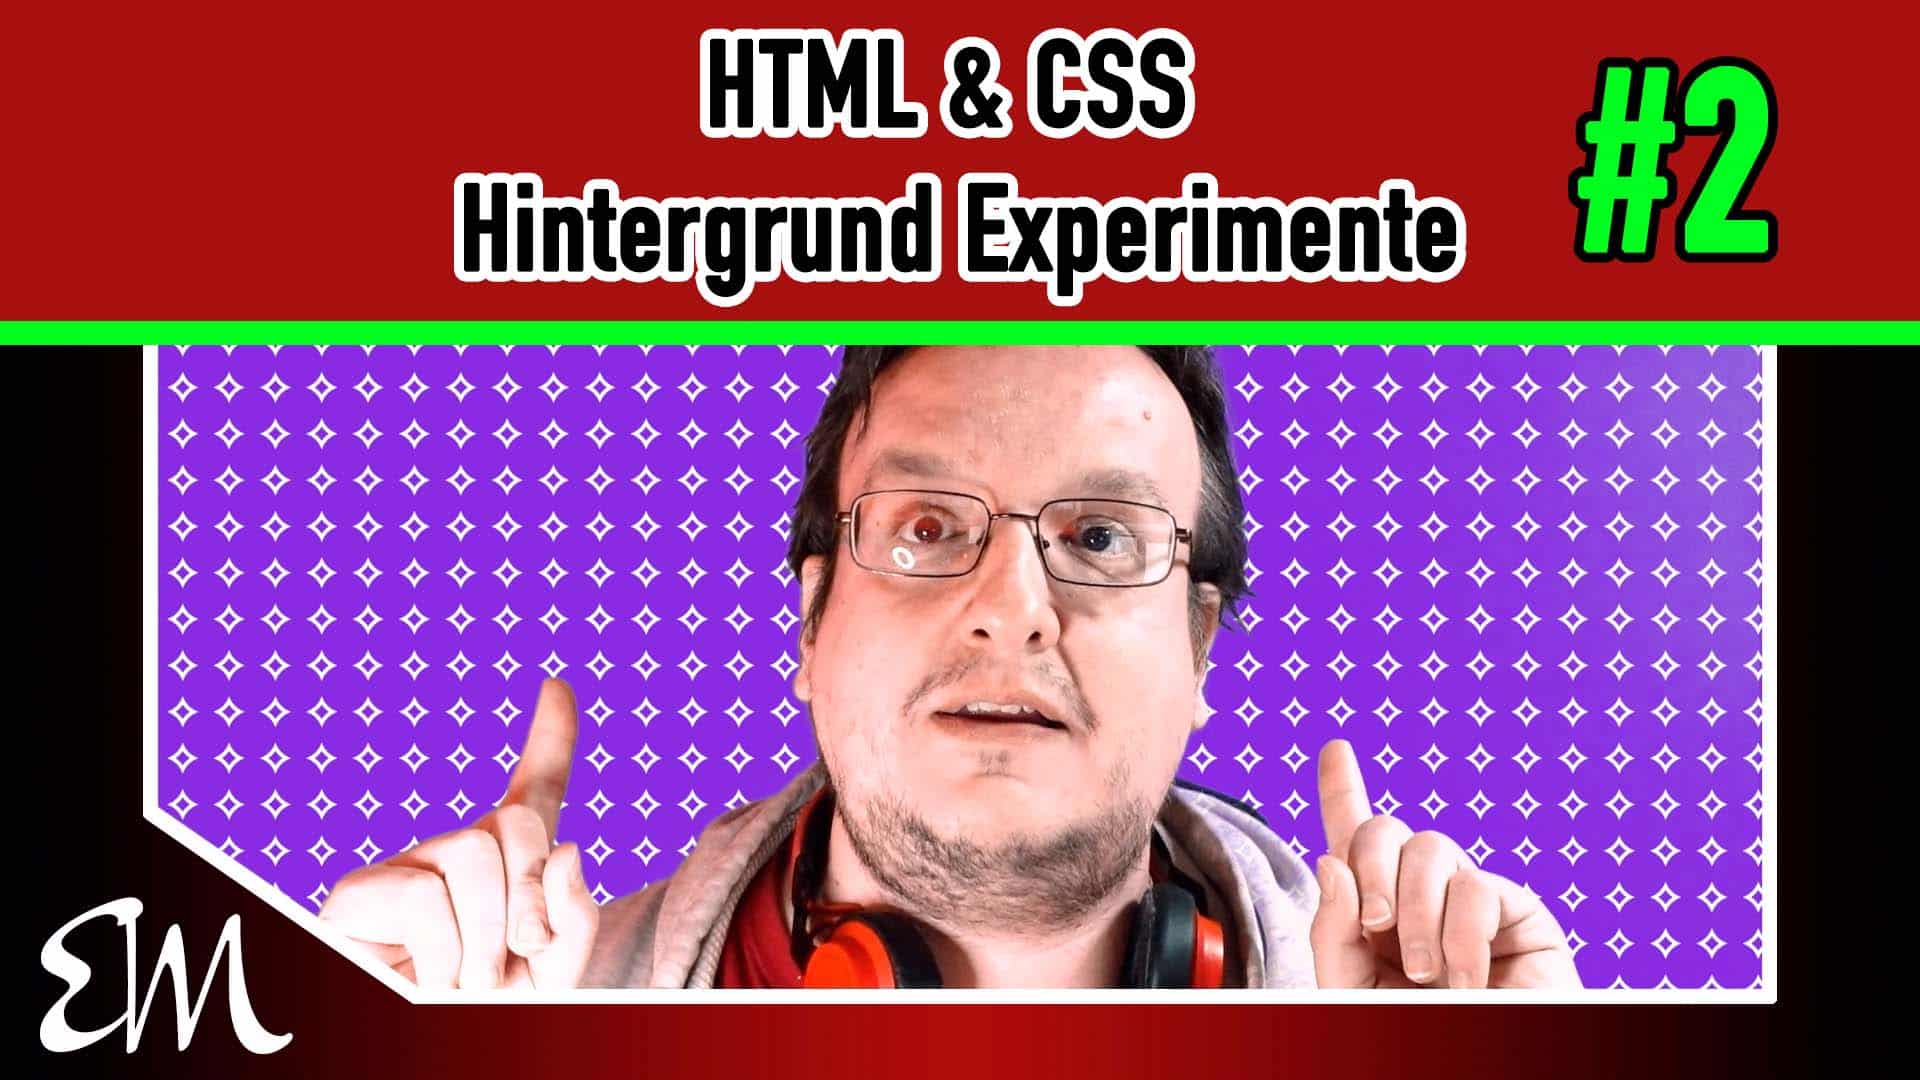 HTML & CSS Hintergrund Experimente #2